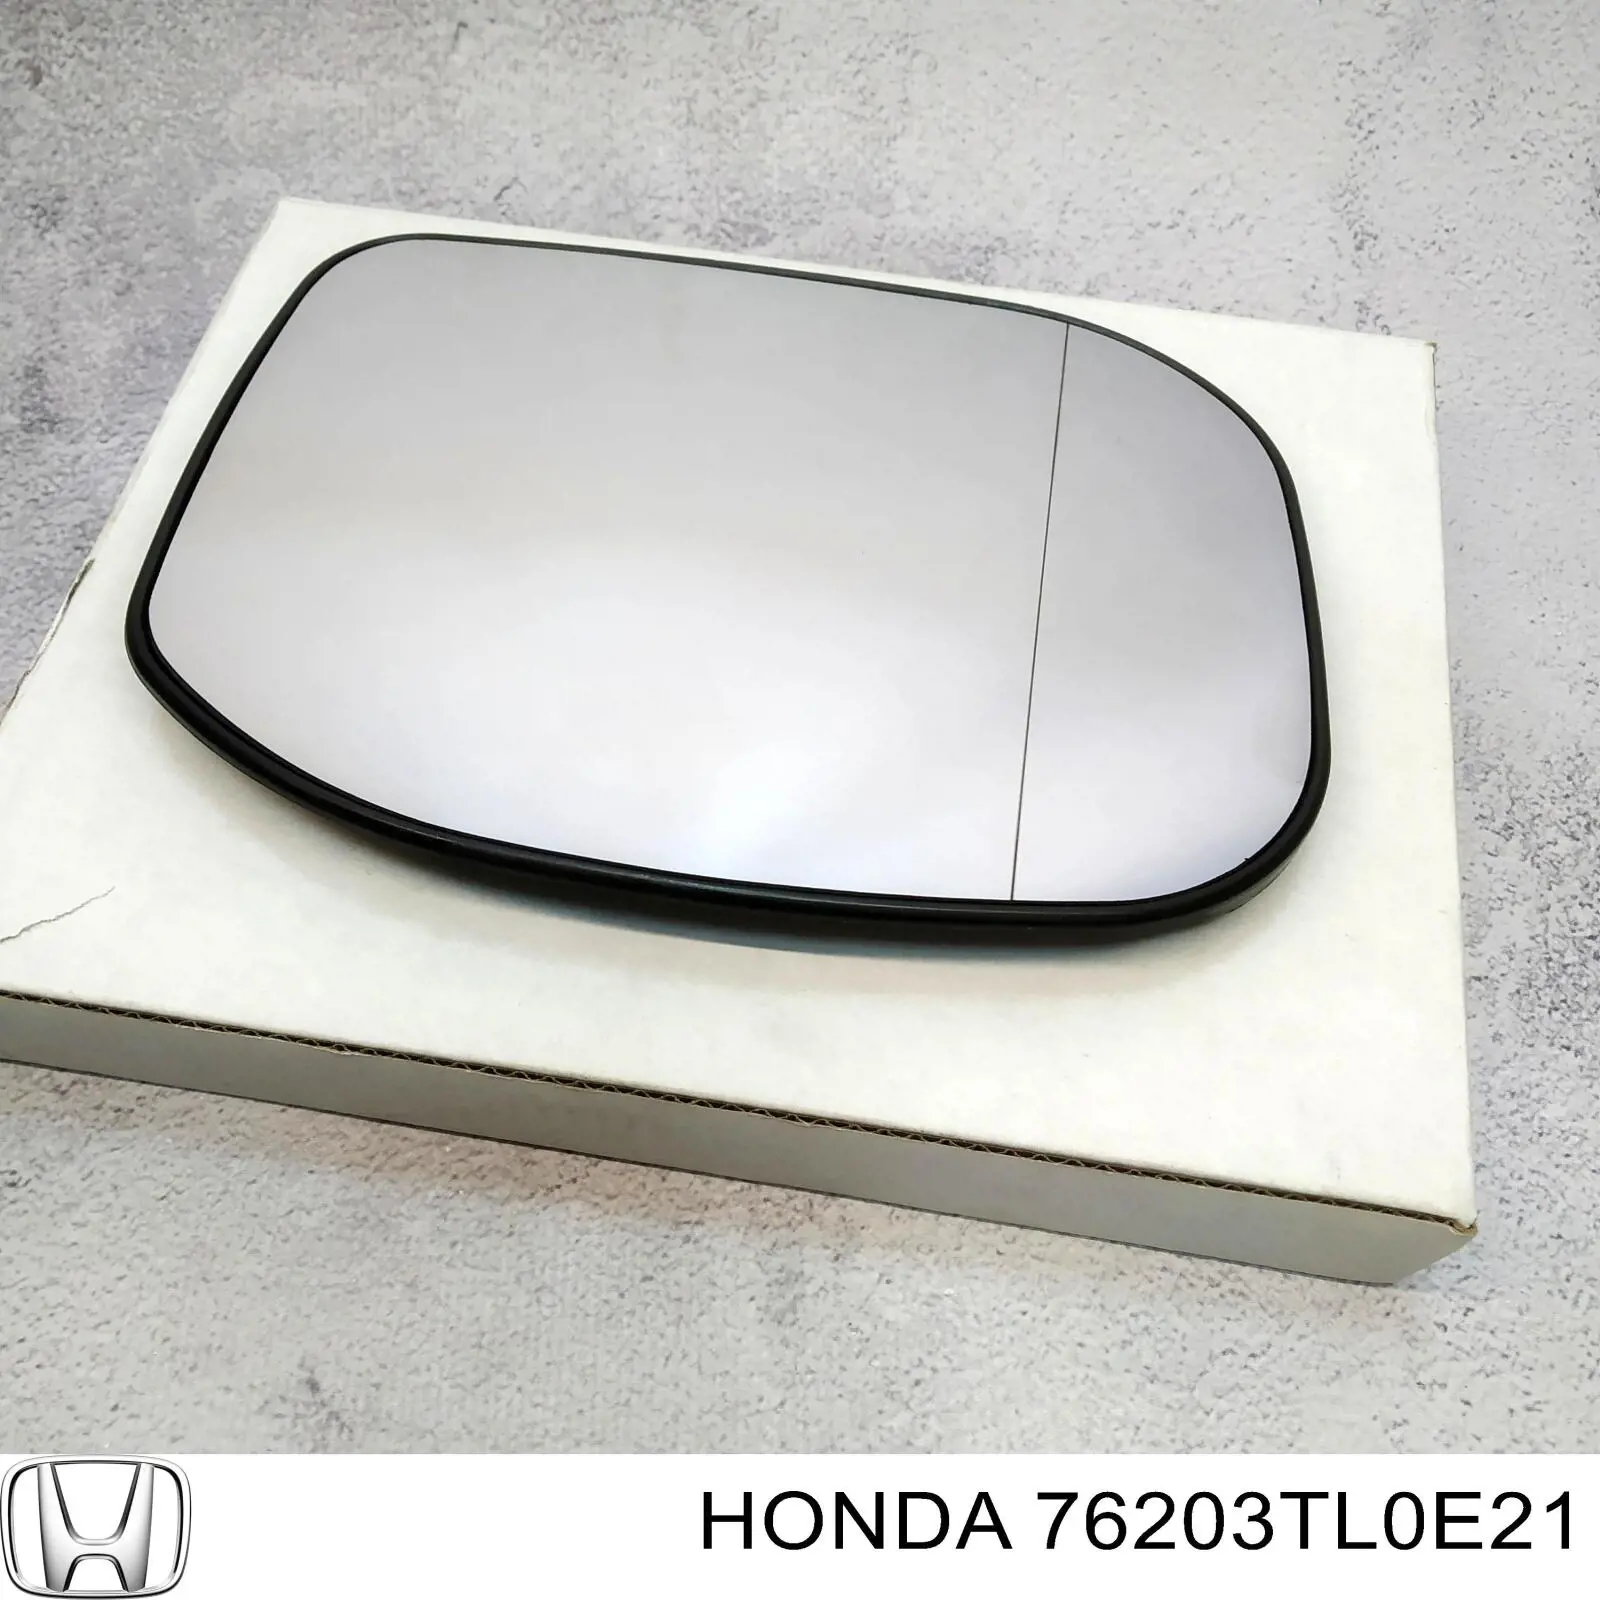 Зеркальный элемент зеркала заднего вида правого Honda 76203TL0E21